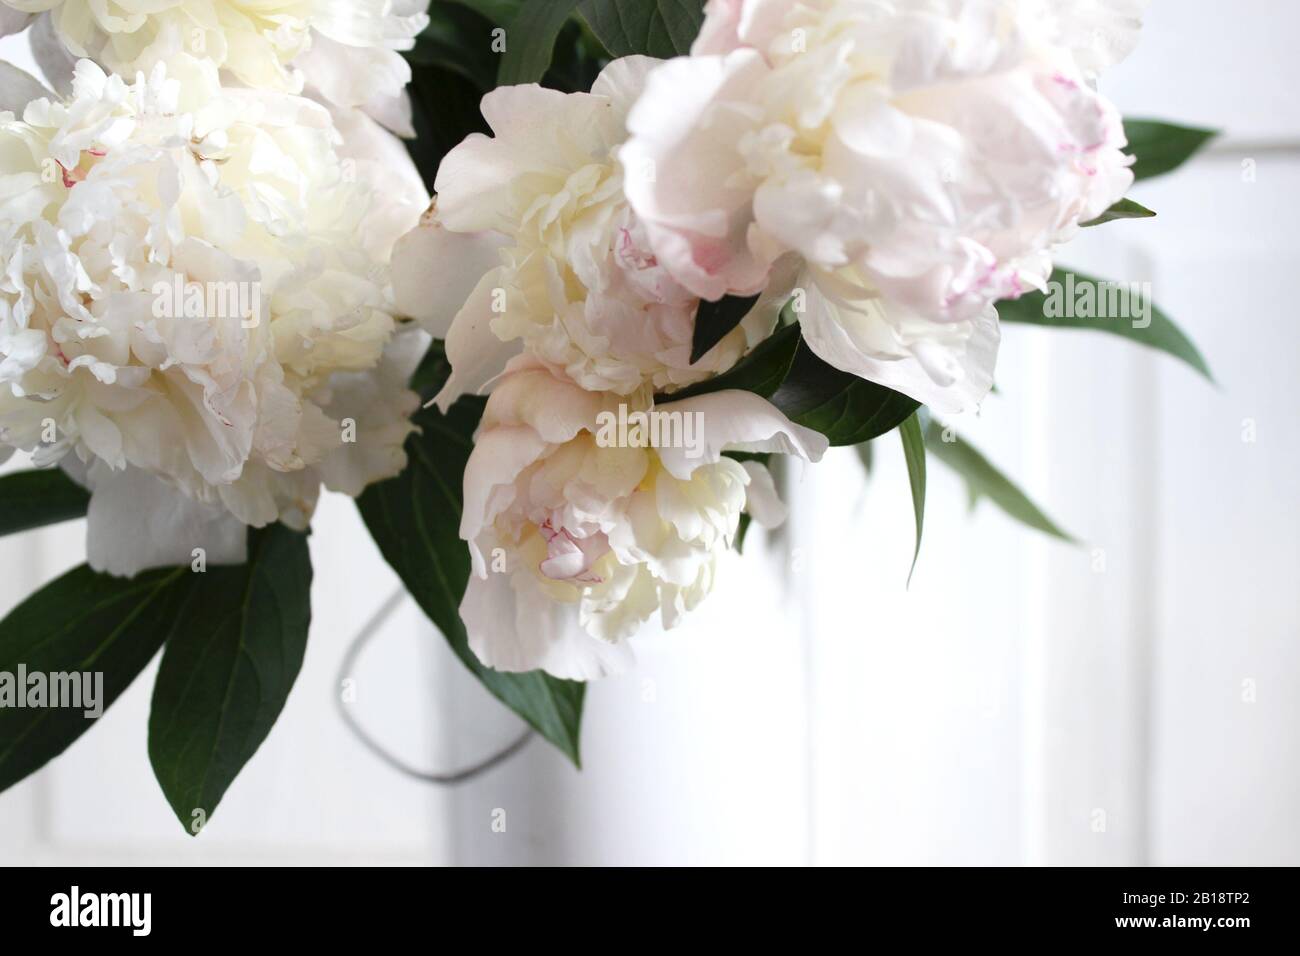 White and Pale Pink Ponies Arrangement Closeup. Hochzeit Feiertage Blumen. Stockfoto